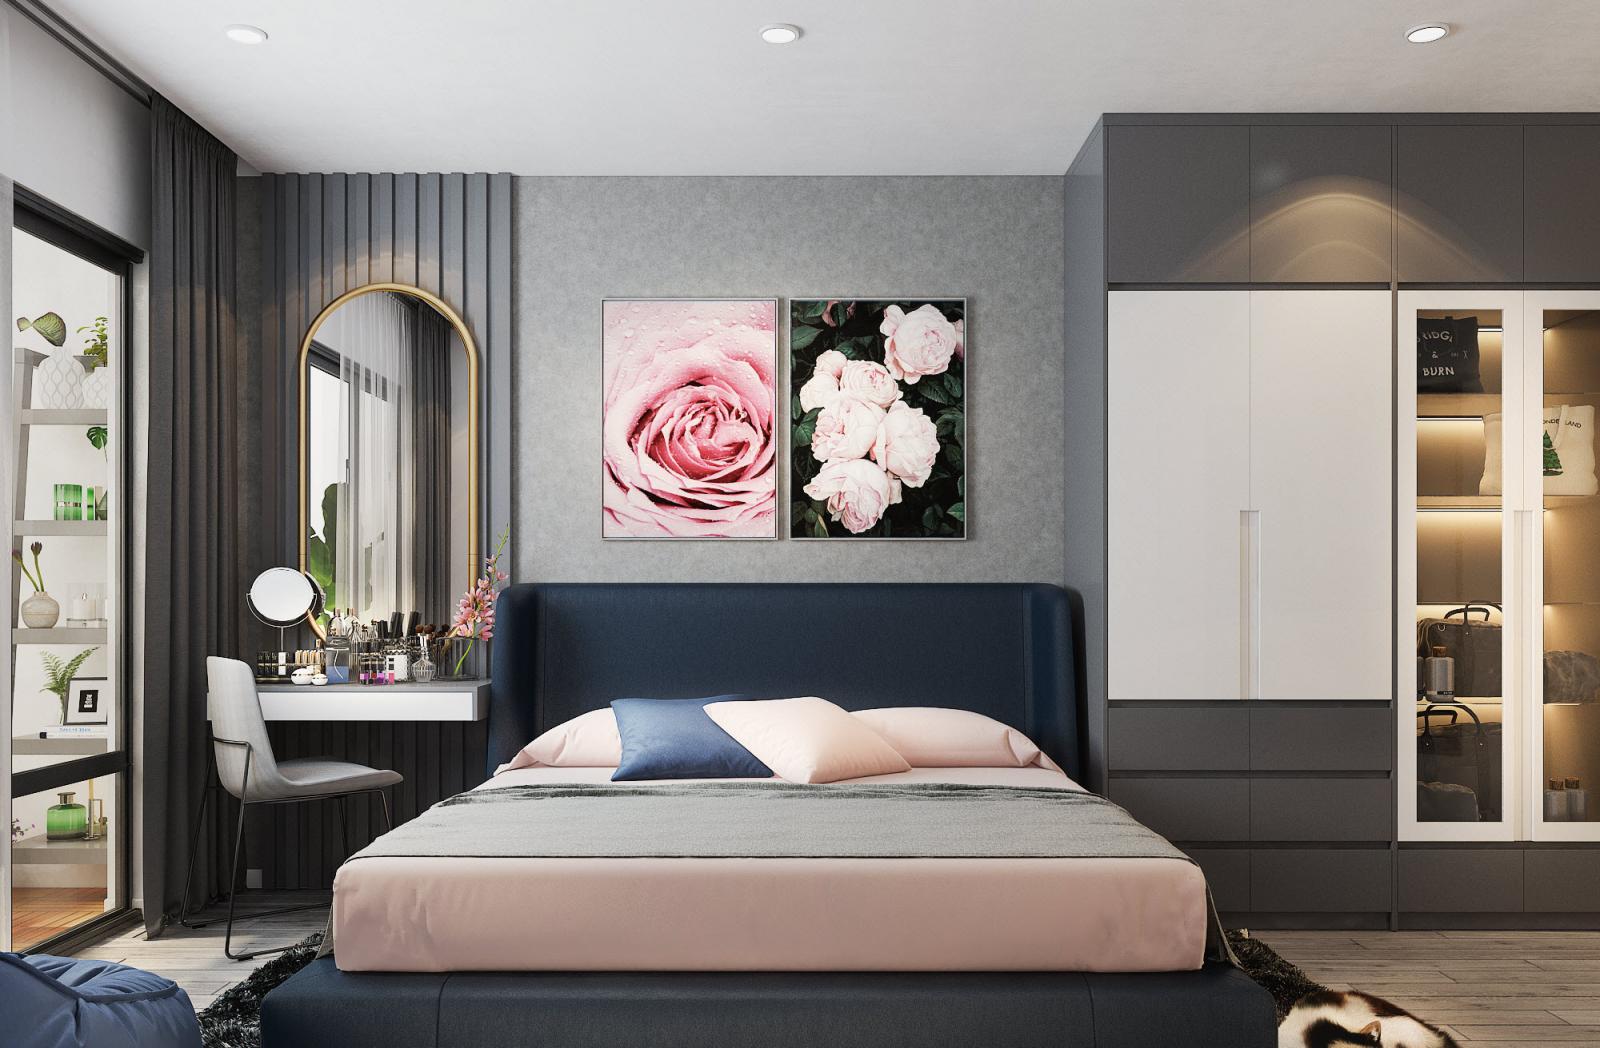 Phòng ngủ master toát lên vẻ sang trọng hiện đại mà vẫn rất nữ tính, nhẹ nhàng với tranh tường hoa hồng tạo điểm nhấn.